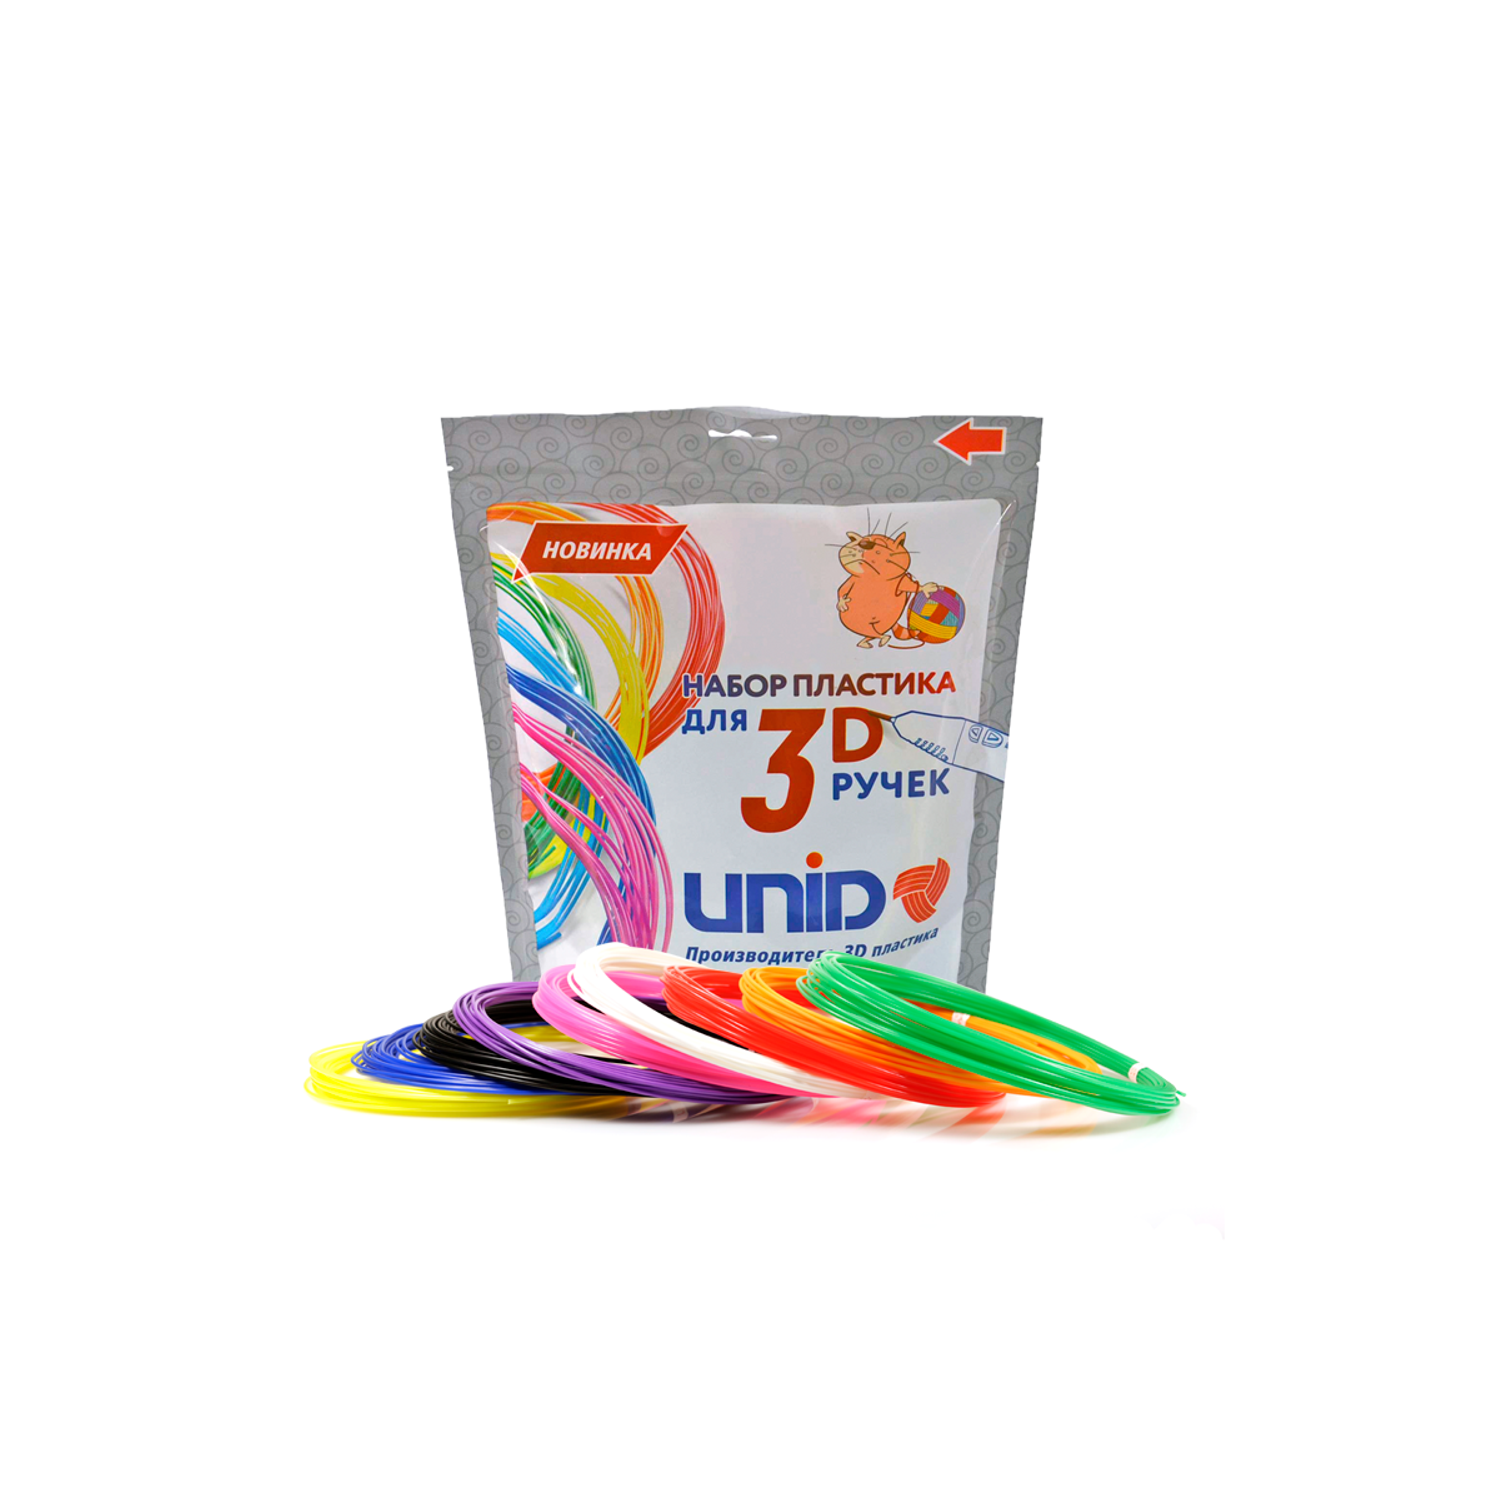 Пластик для 3д ручки UNID PLA9 - фото 1